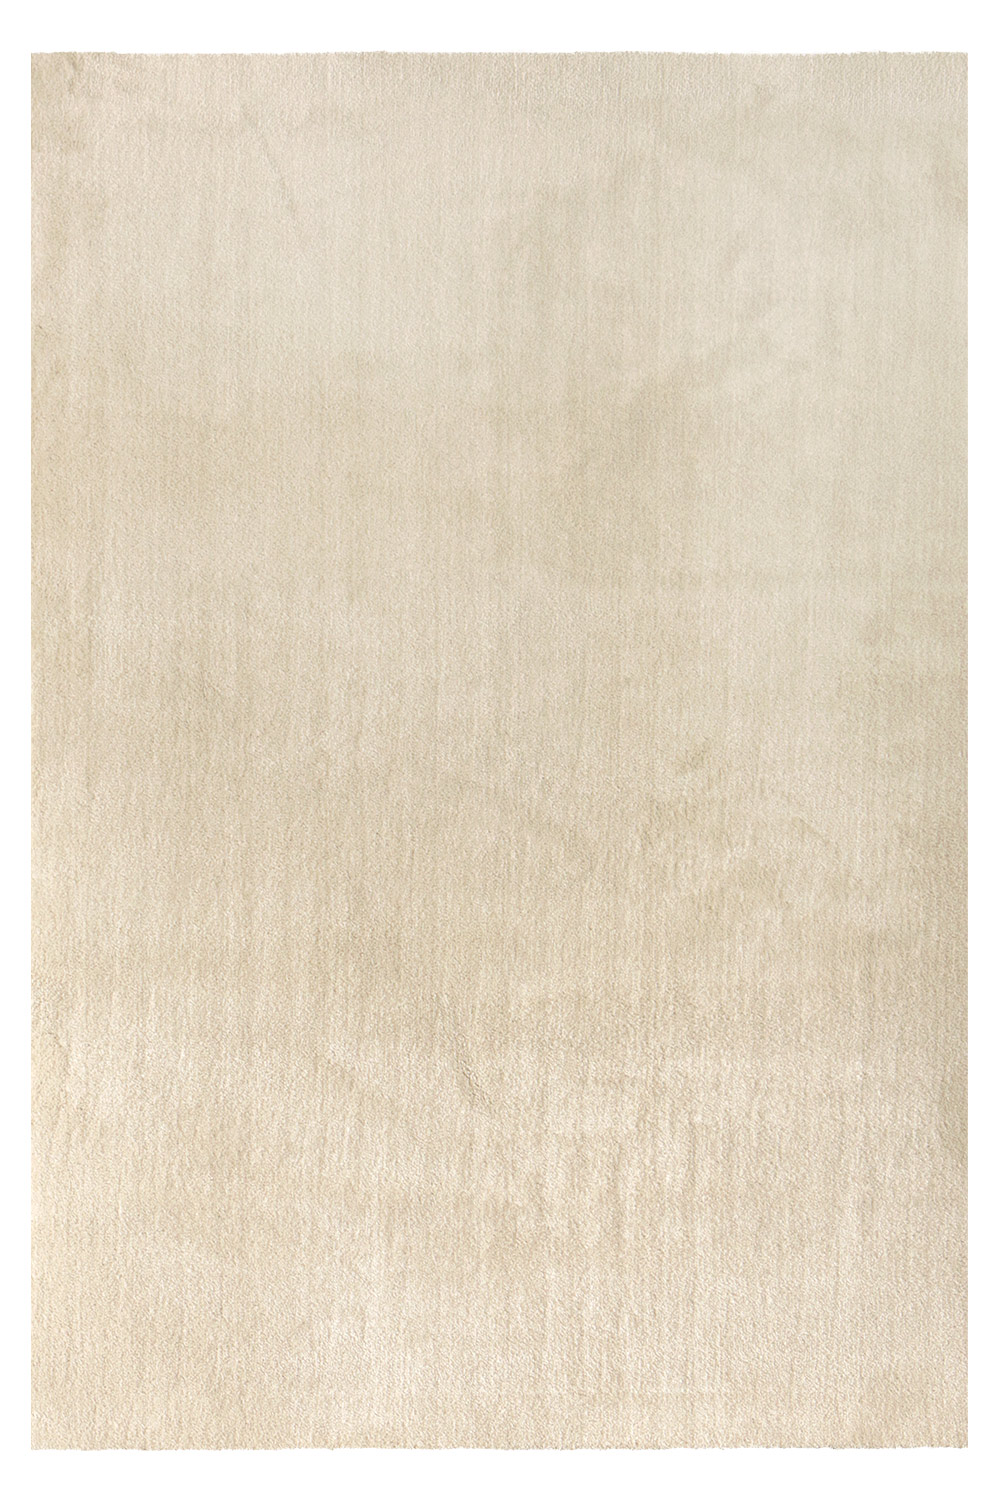 Kusový koberec Labrador 71351 056 Cream 120x170 cm